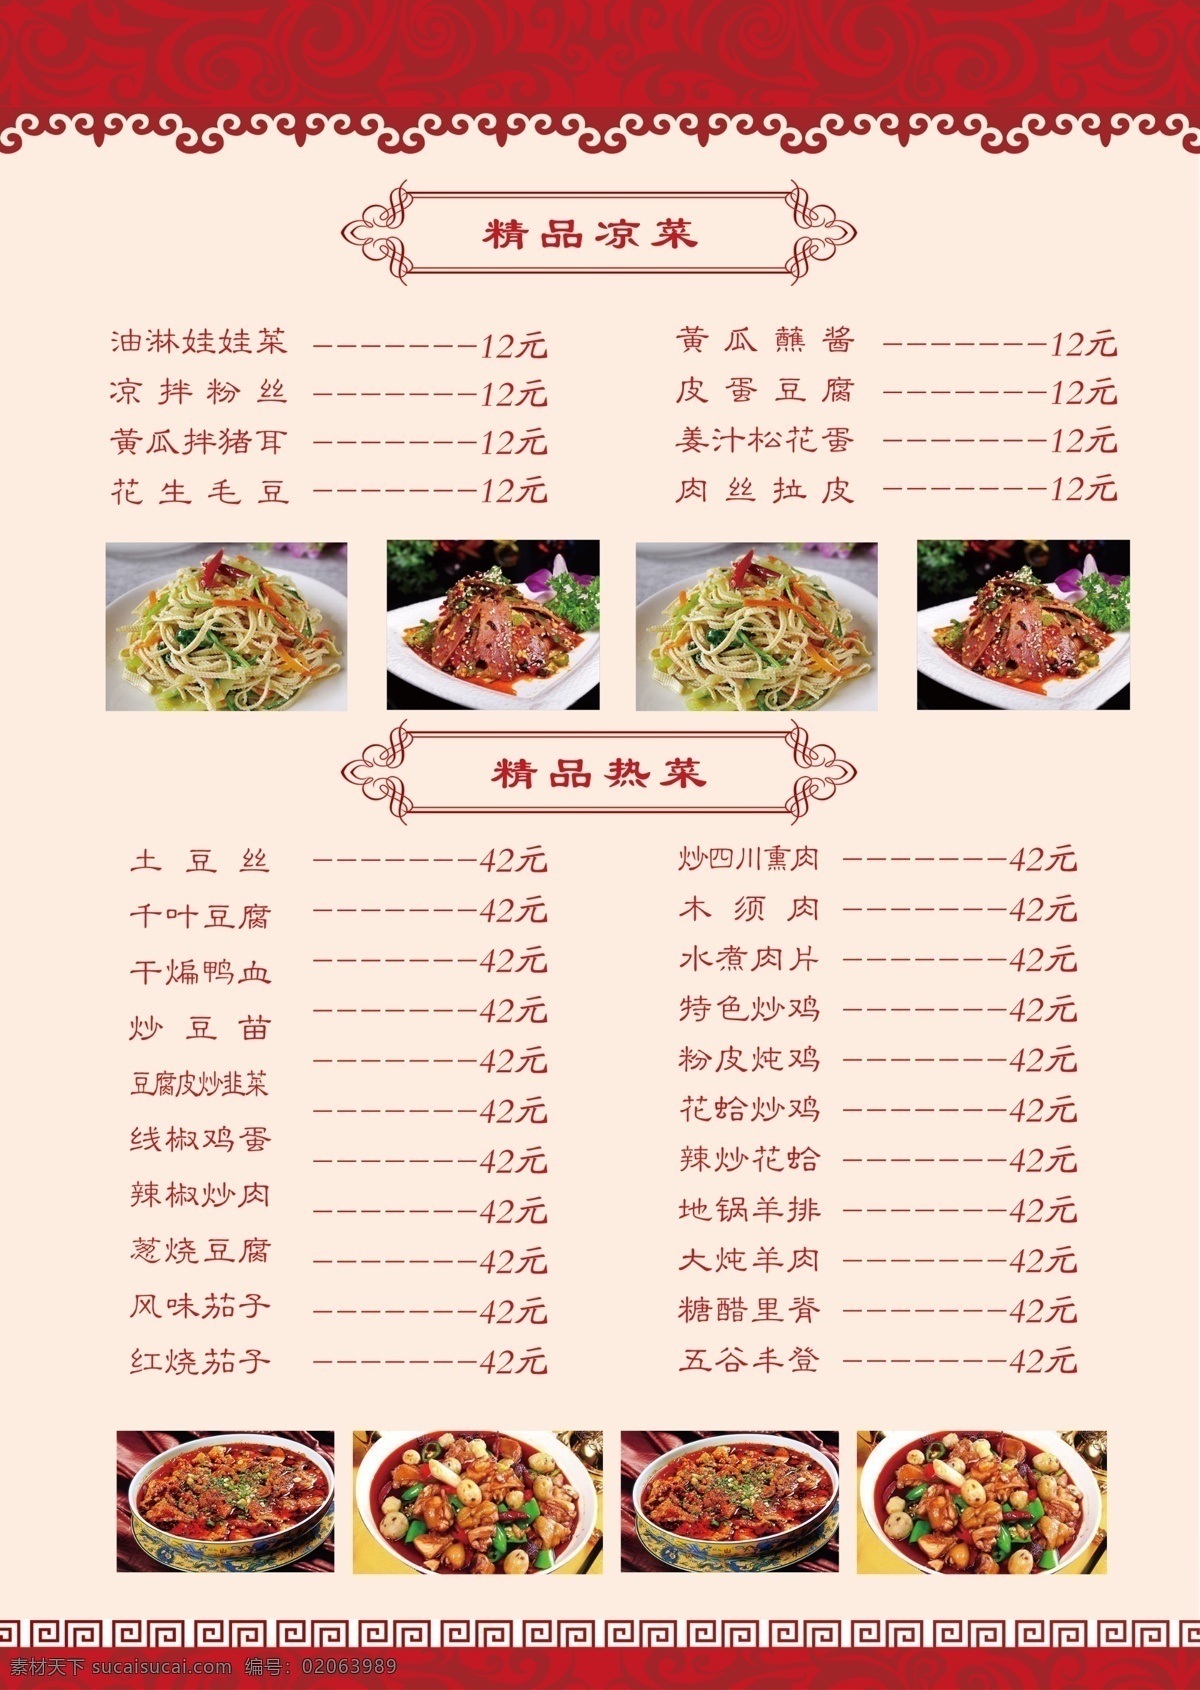 中餐厅 菜单 中餐厅菜单 菜单素材 海报 美食海报